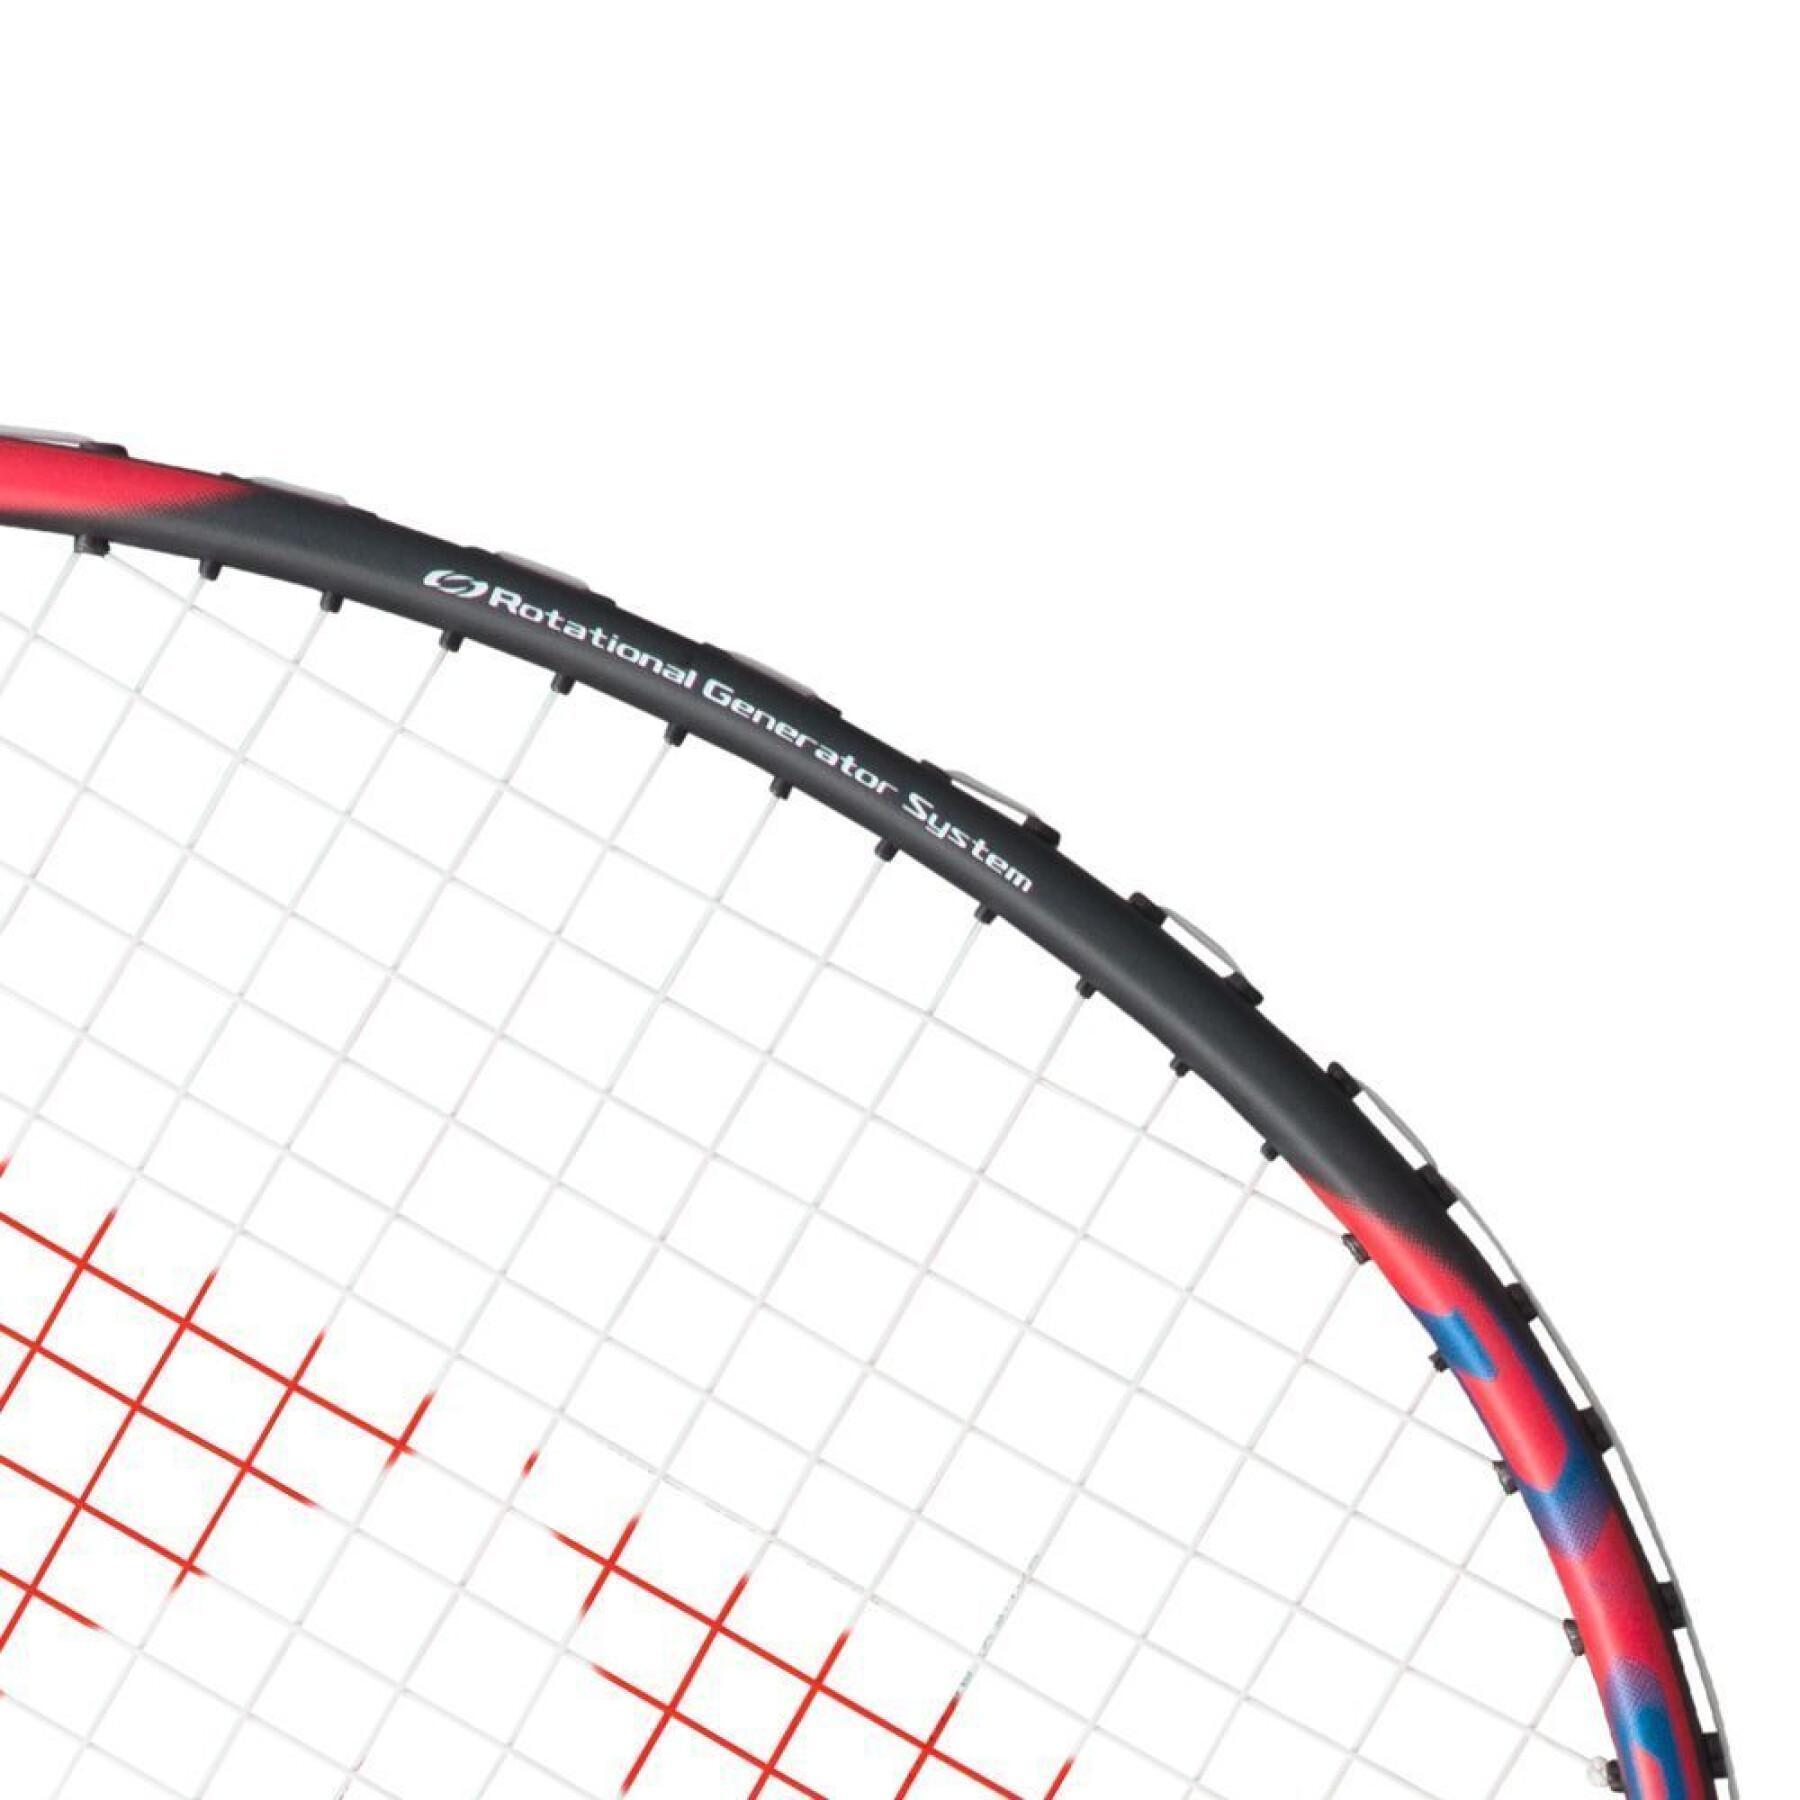 Raquette de badminton Yonex astrox 7 dg